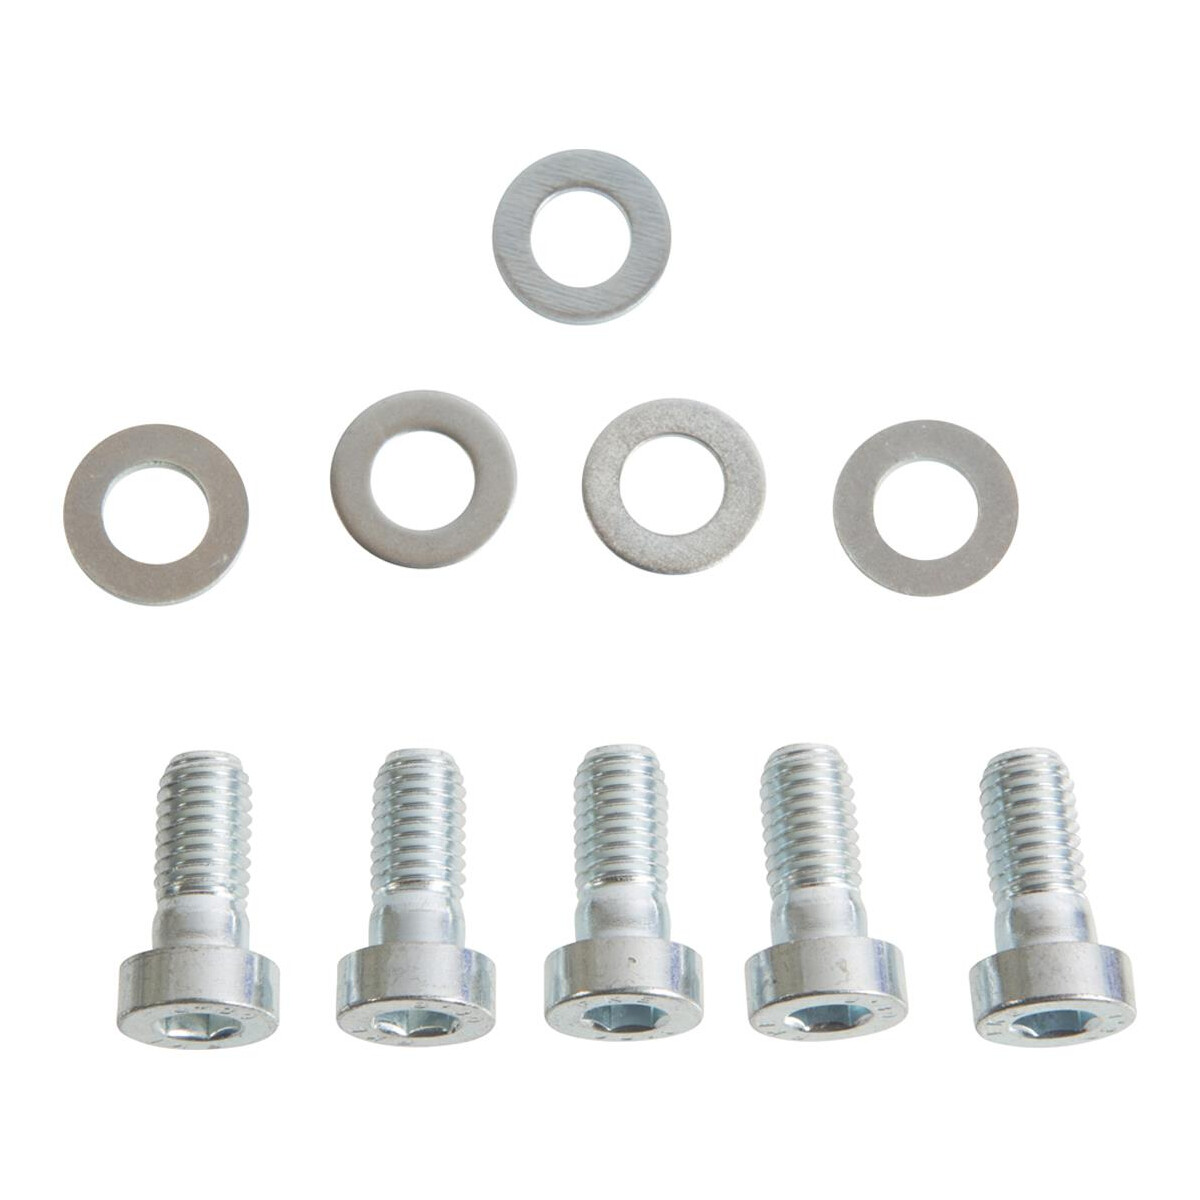 T25 screw set for lower roler guide assembly, OEM partnr. N01023911 2 ...